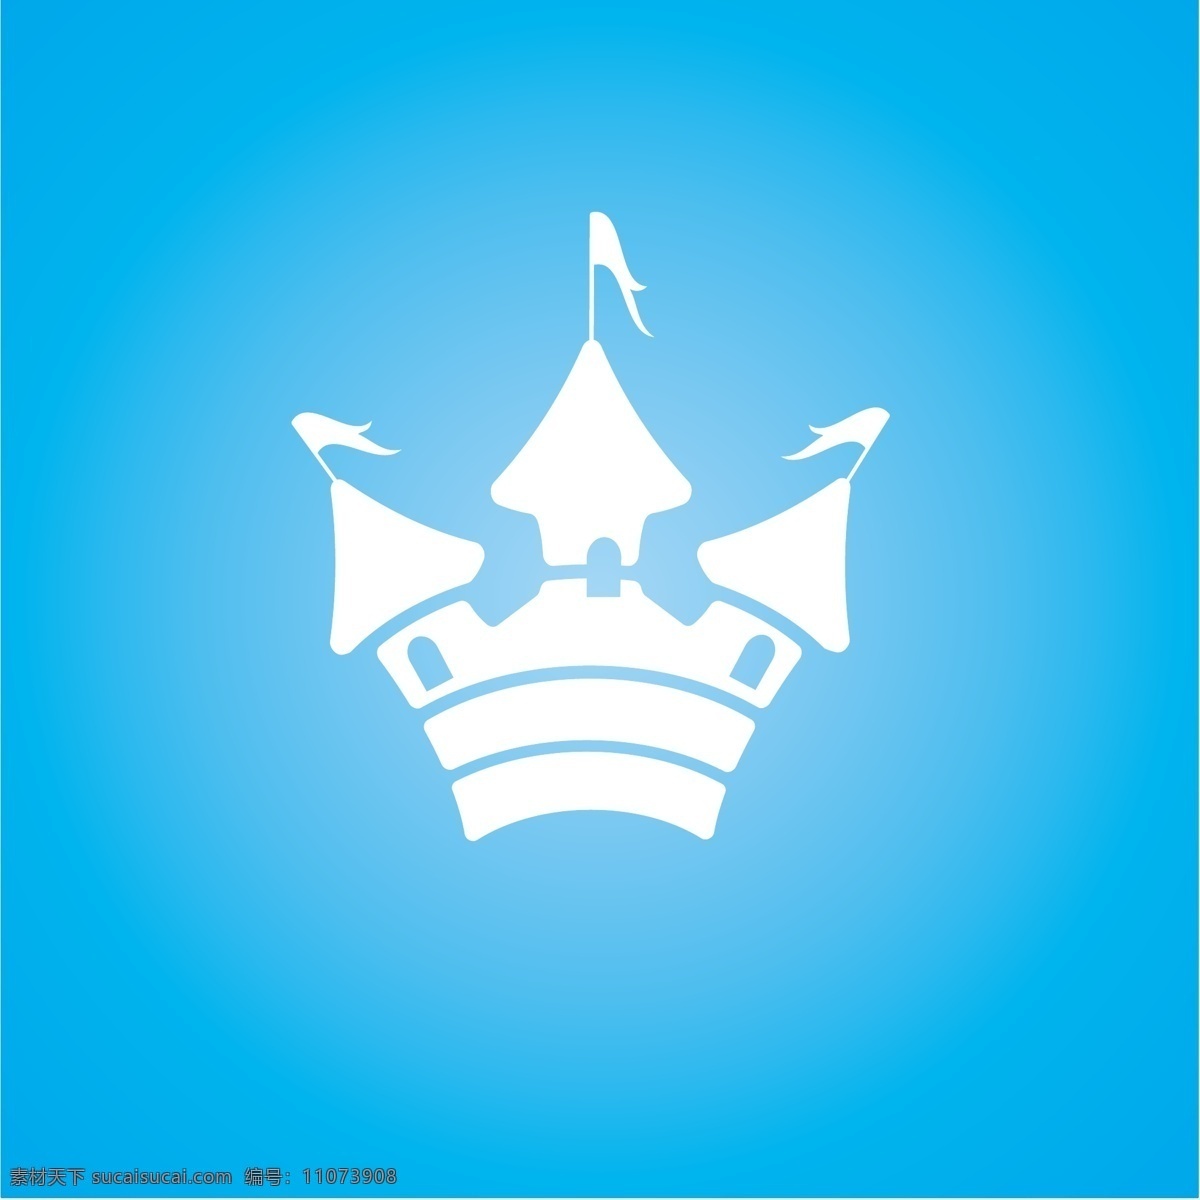 可爱 城堡 矢量 图标 标志 web 标识 插画 创意 高分辨率 国旗 接口 病 媒 生物 时尚 免费 独特的 原始的 高质量 设计新的 ui元素 hd 元素 详细的 向量的城堡 城堡的图标 人工智能 城堡的旗帜 psd源文件